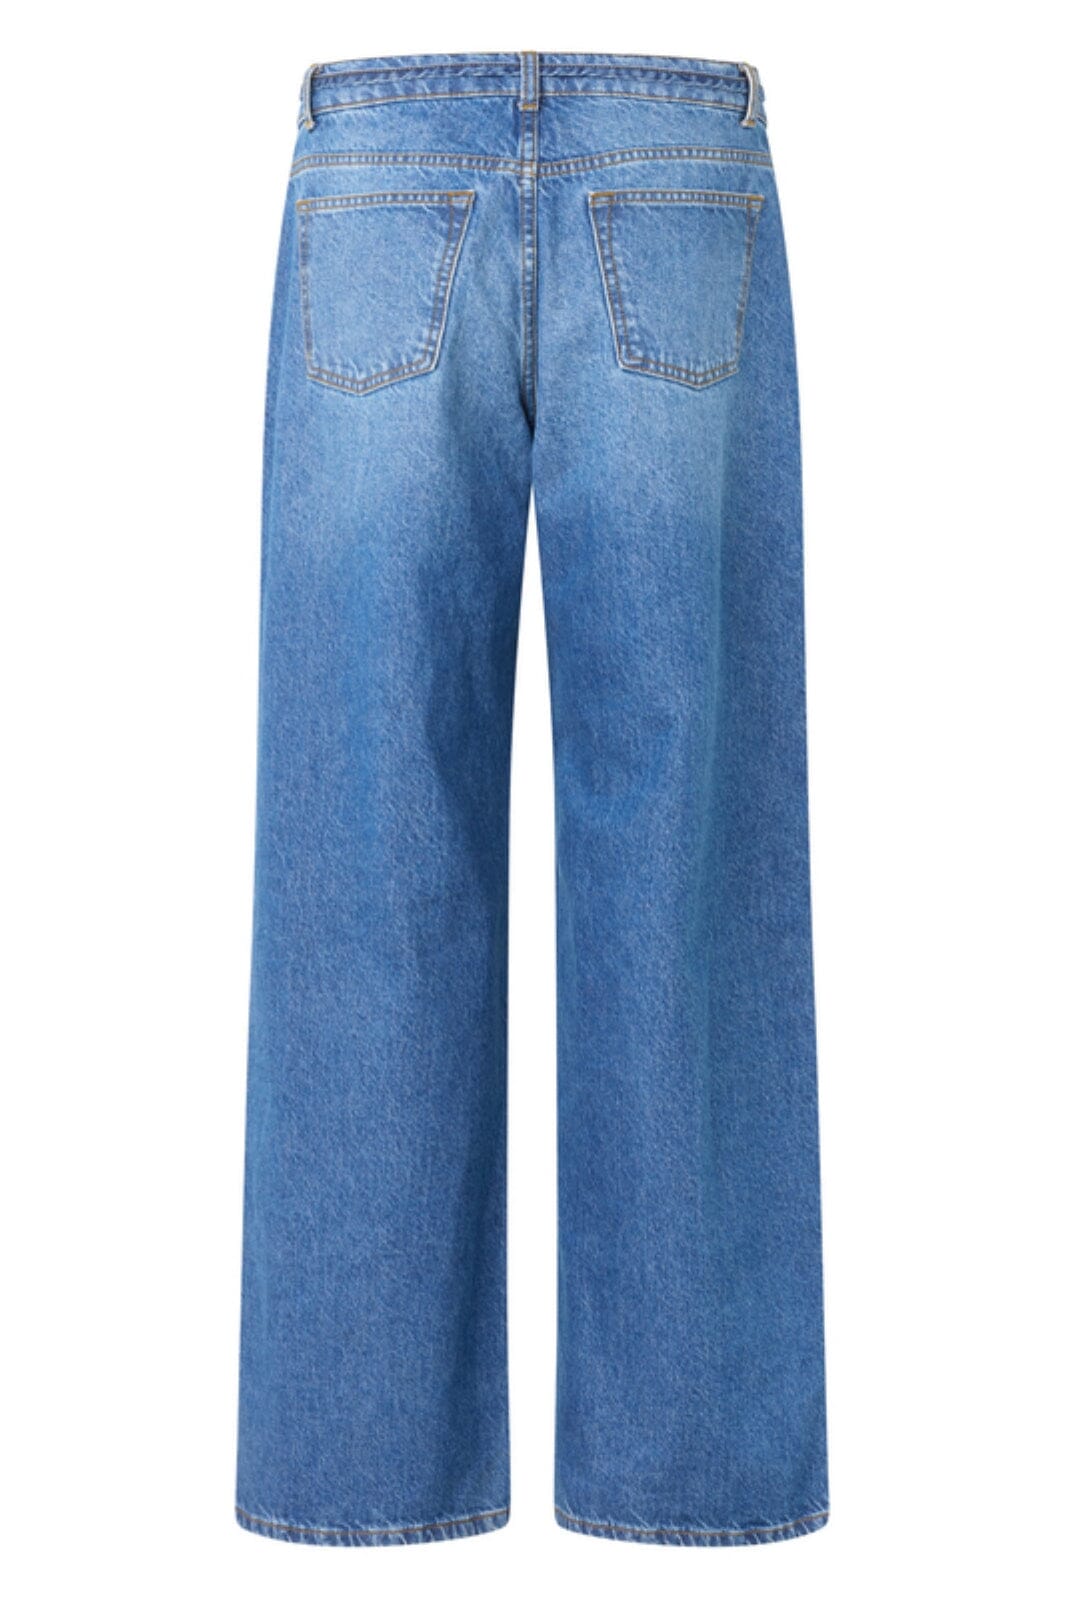 Forudbestilling - Global Funk - Pixann-G - P32 Vintage Blue Wash Jeans 